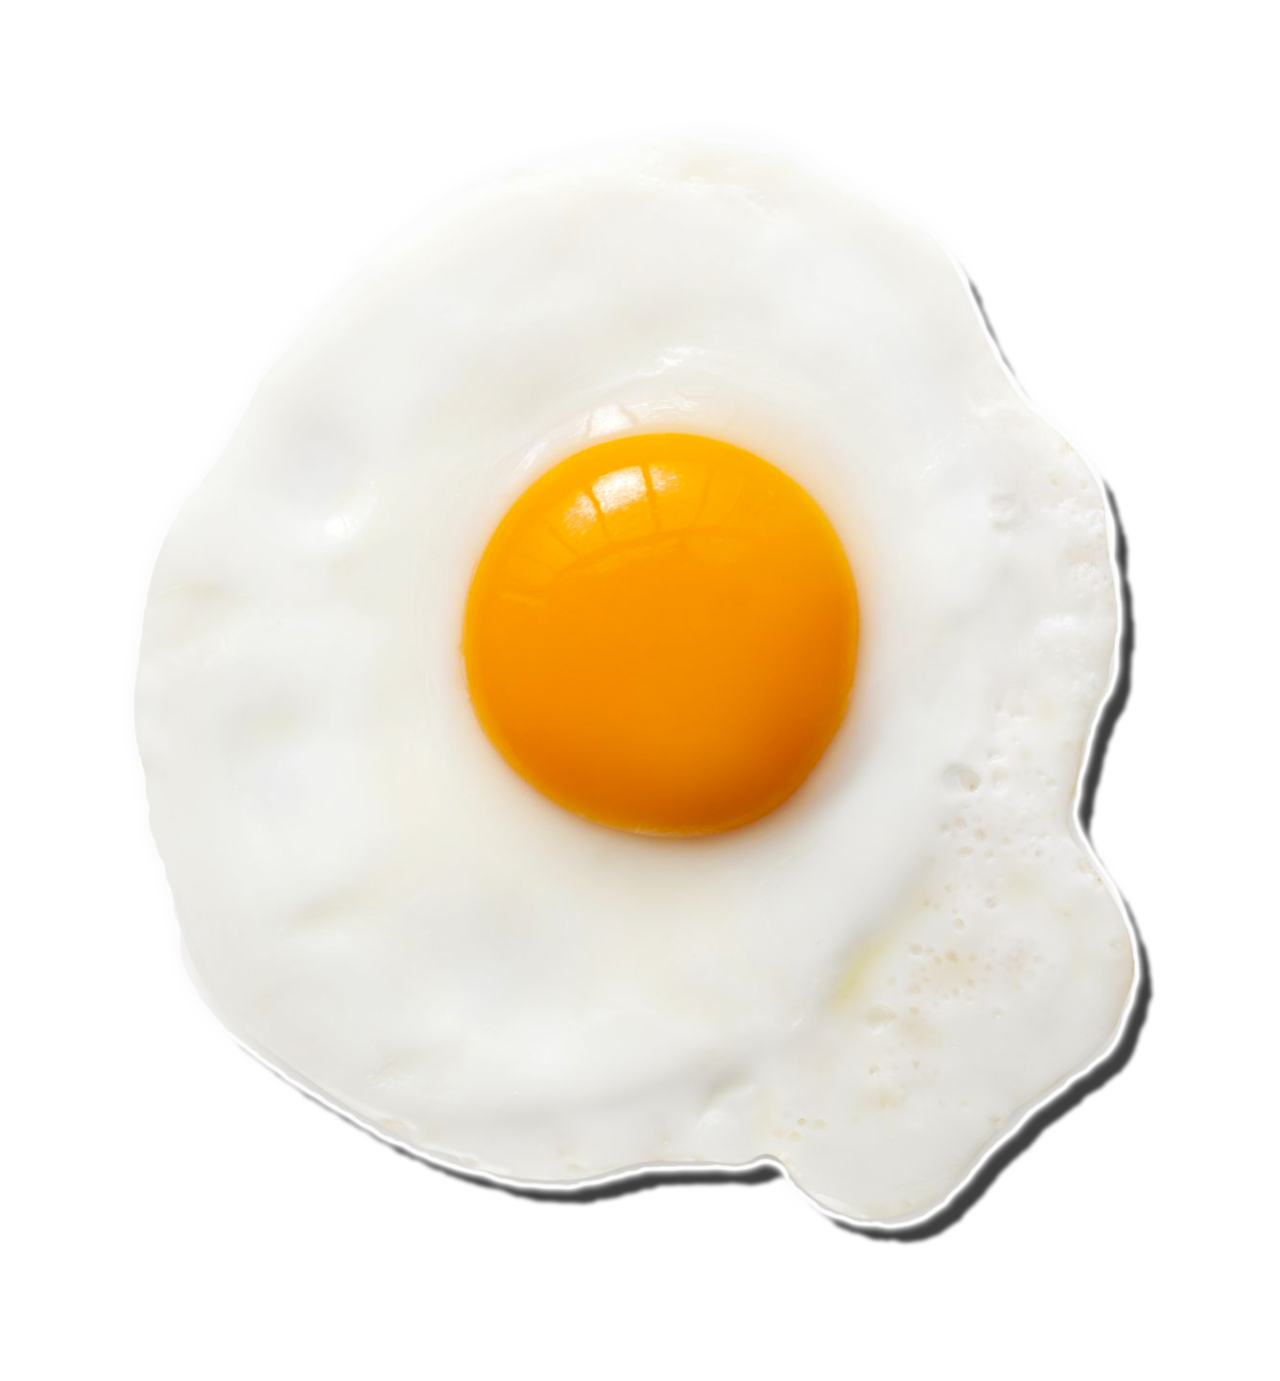 Egg Fried Crispy Free Download Image PNG Image